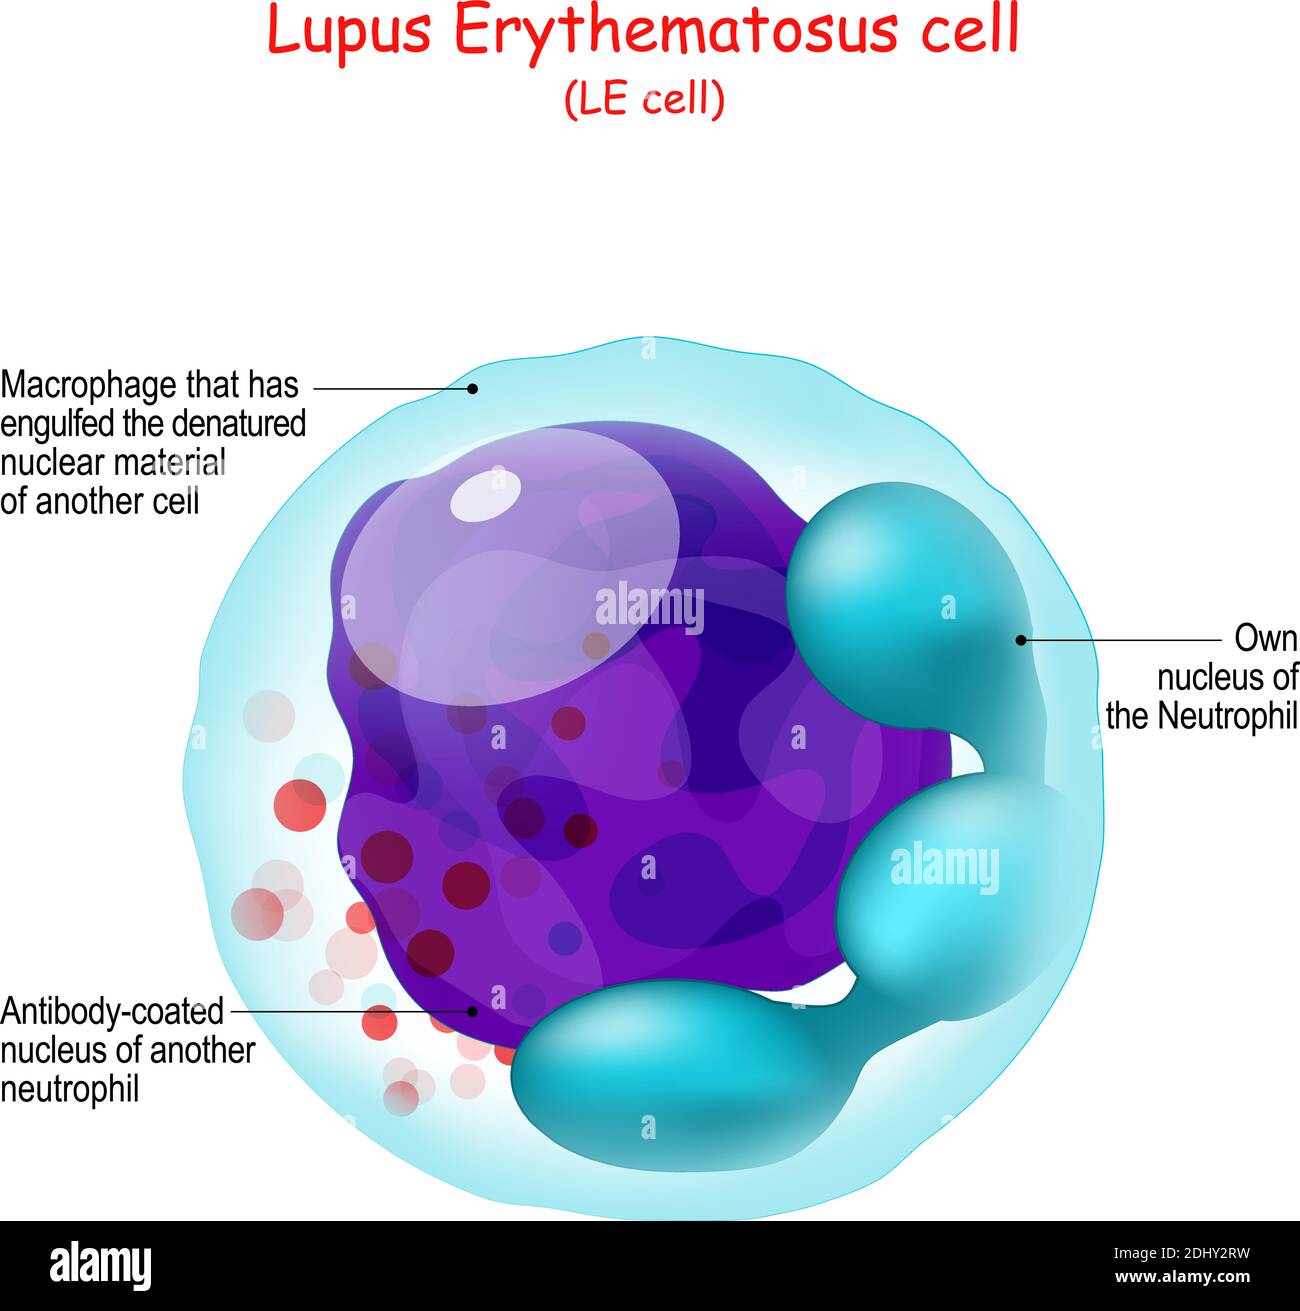 Lupus eritematoso. Struttura DELLA cella LE. Anatomia umana primo piano del neutrofilo o macrofago che ha inghiottito il materiale nucleare denaturato Illustrazione Vettoriale